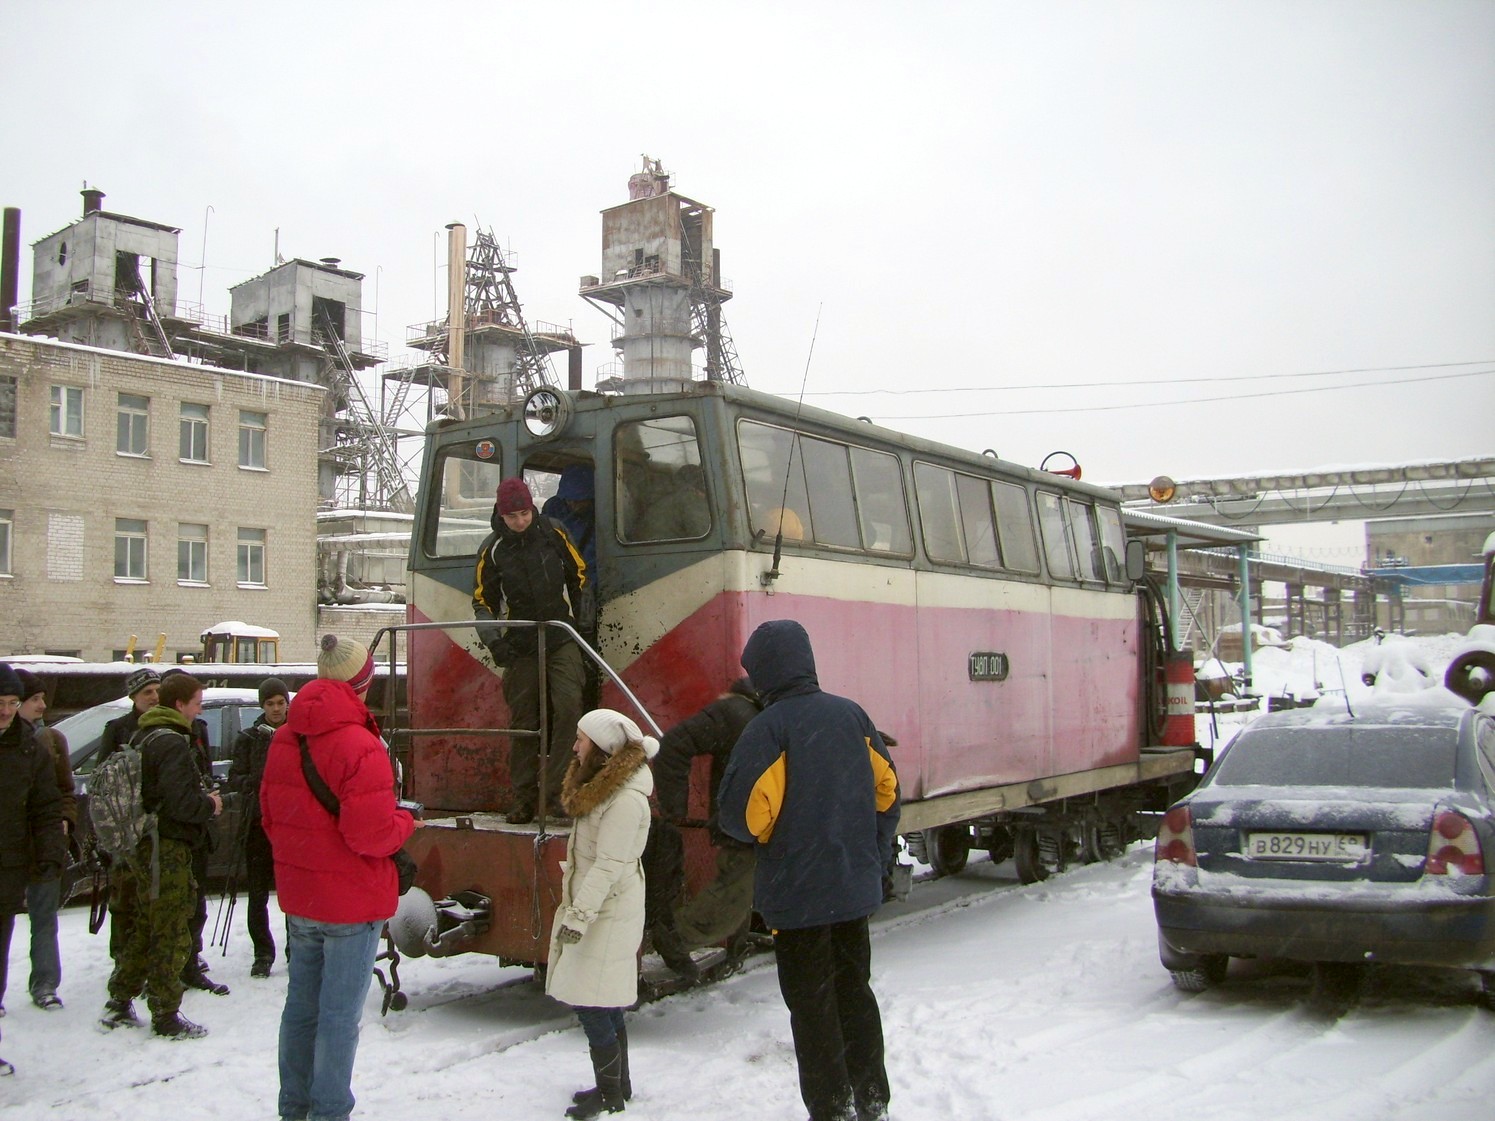 Узкоколейная железная дорога  Тверского комбината строительных материалов №2 — фотографии, сделанные в 2010 году (часть 11)